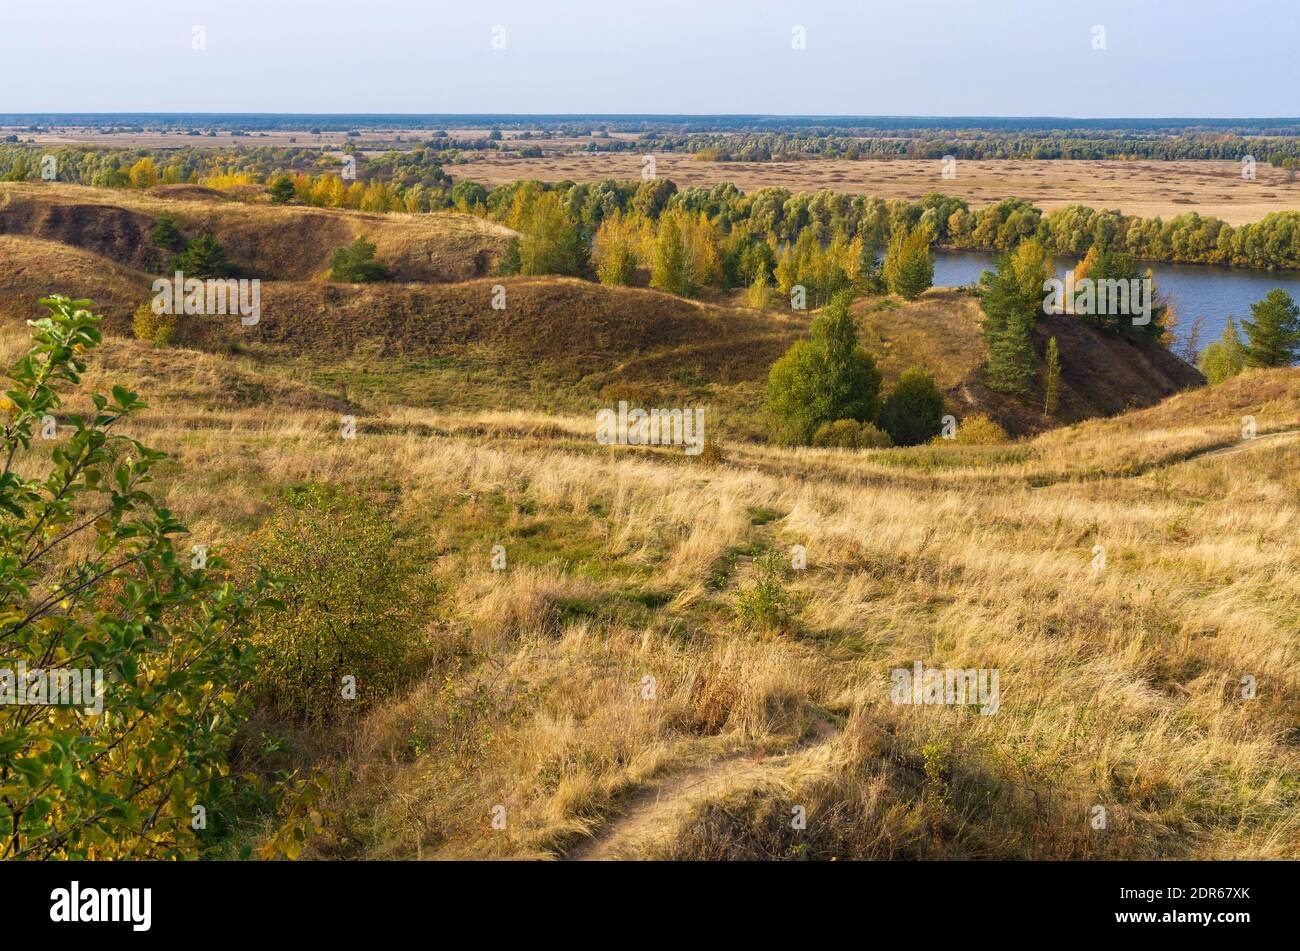 Paysage d'automne avec des arbres, des collines et une rivière. Vue russe typique dans les riches couleurs dorées et vertes. Banque D'Images